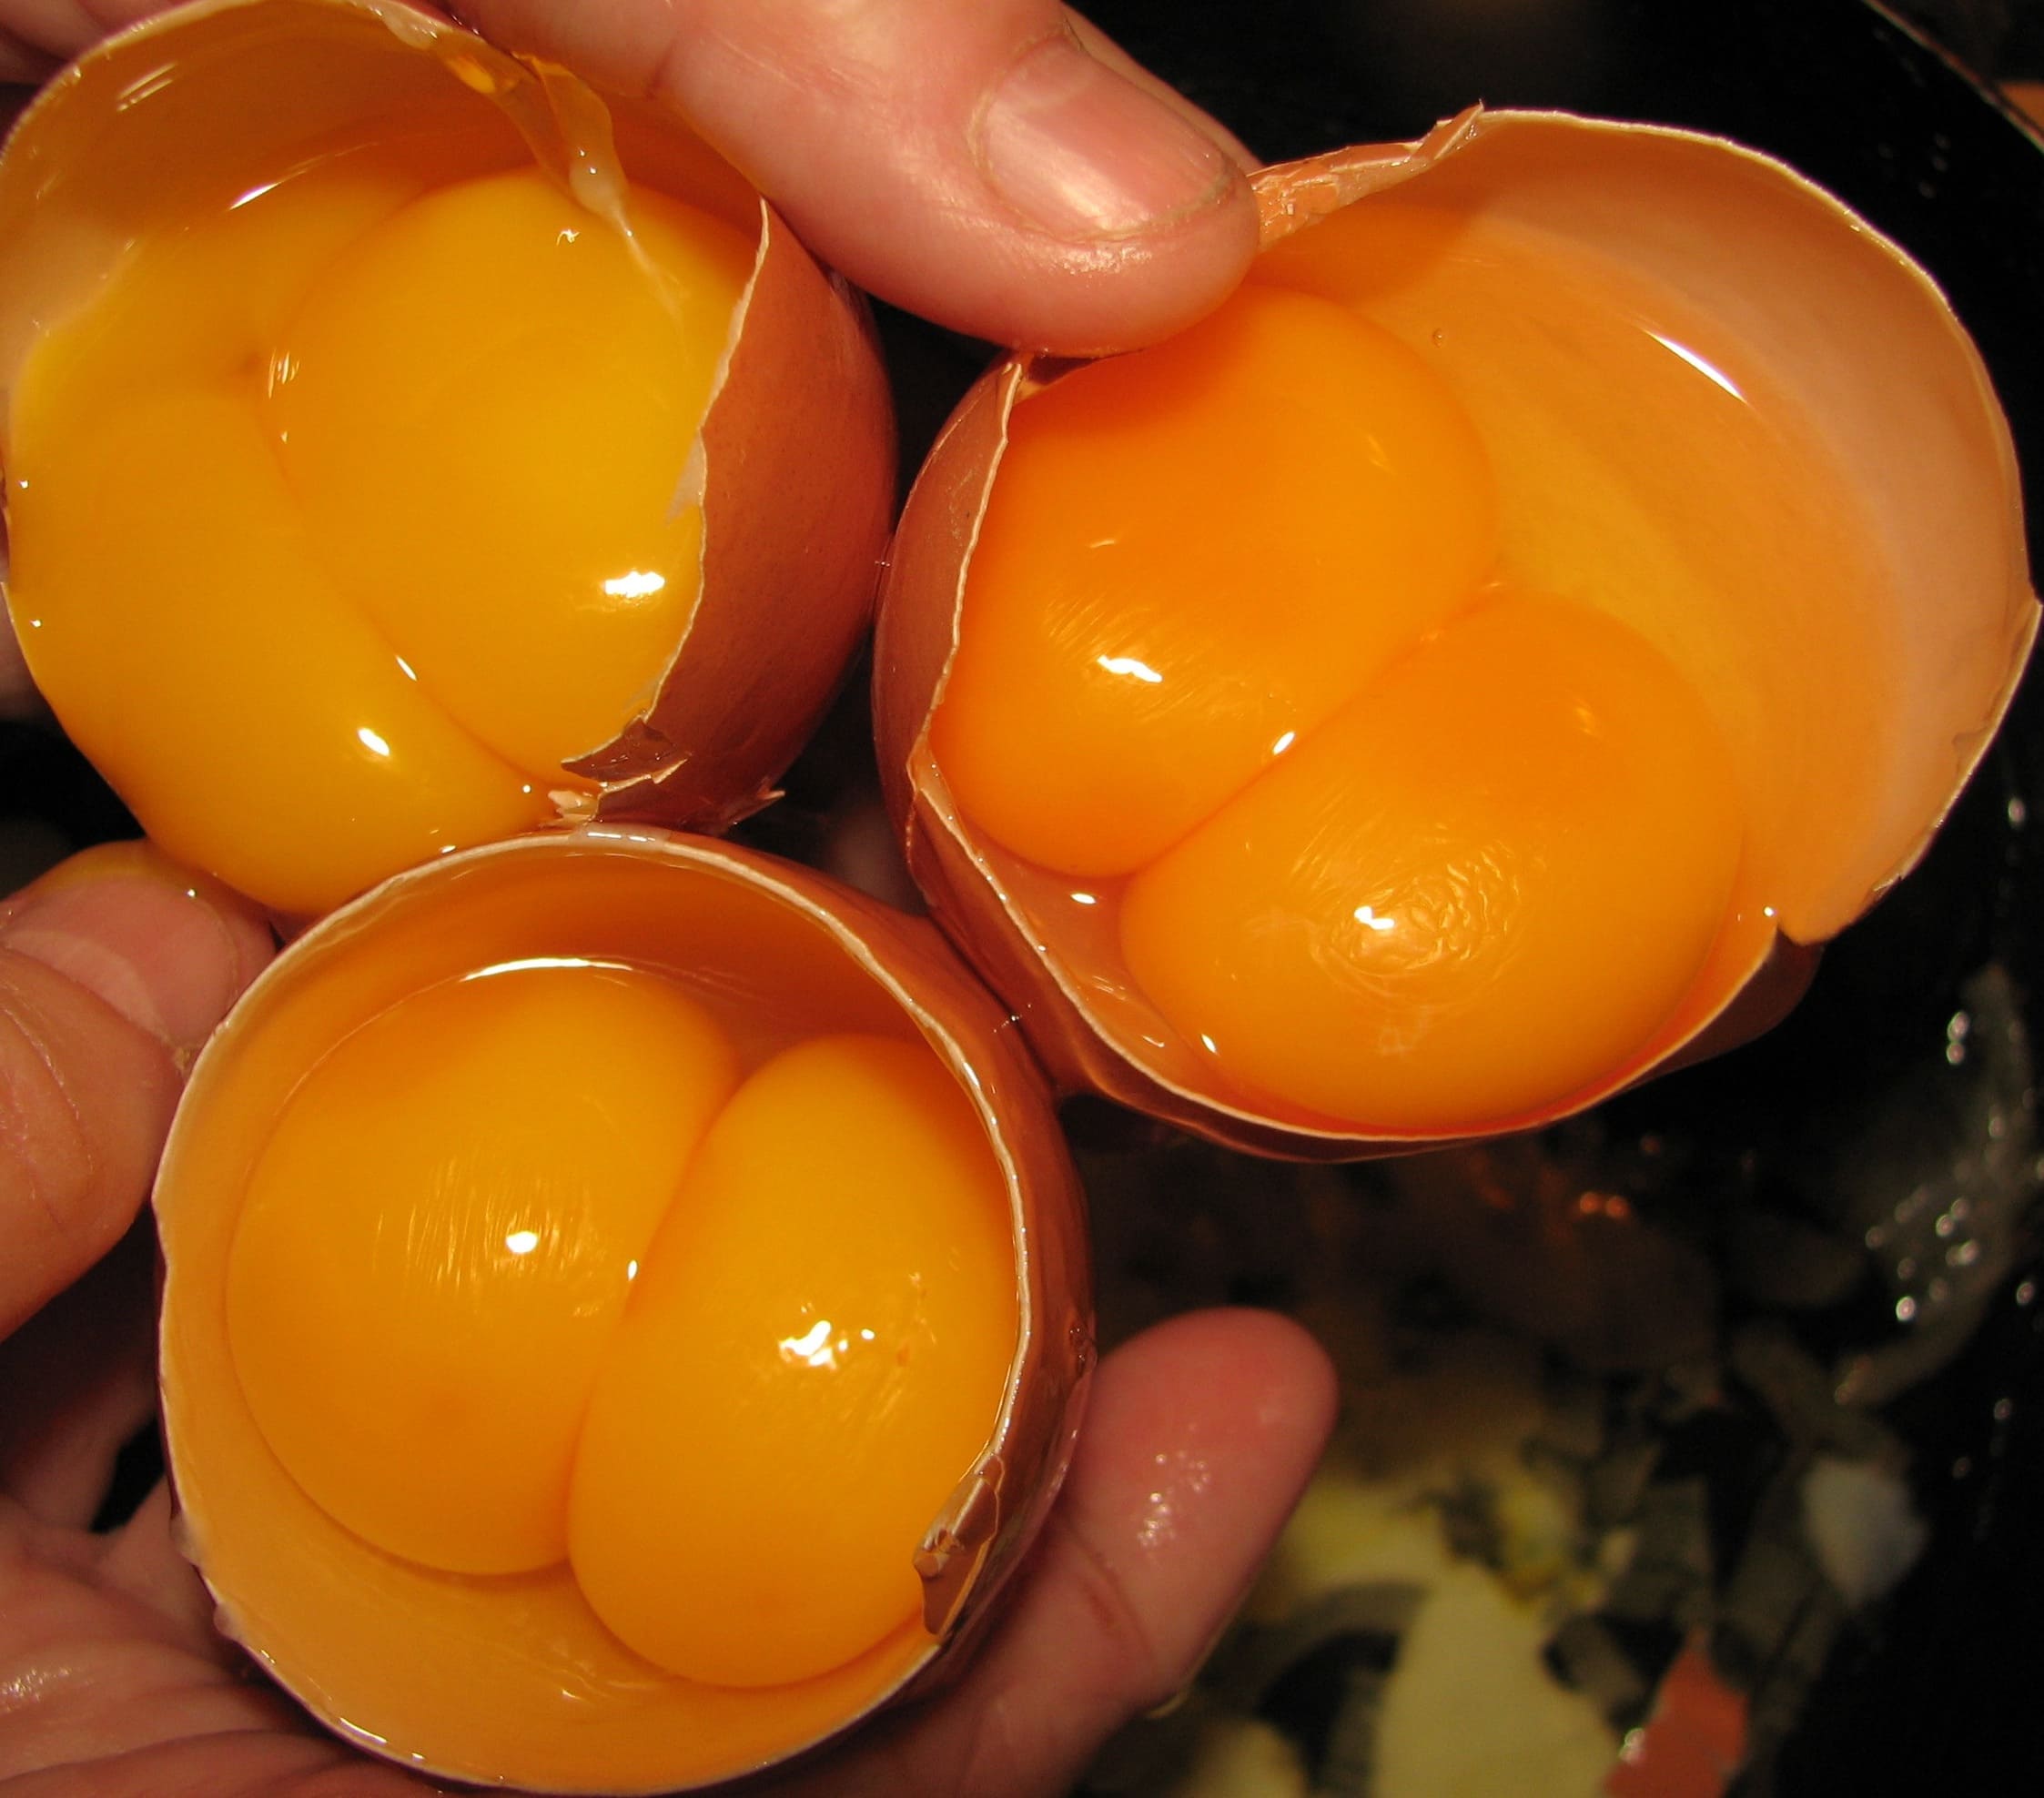 От чего зависит цвет скорлупы куриного яйца и о чем говорит цвет желтка?